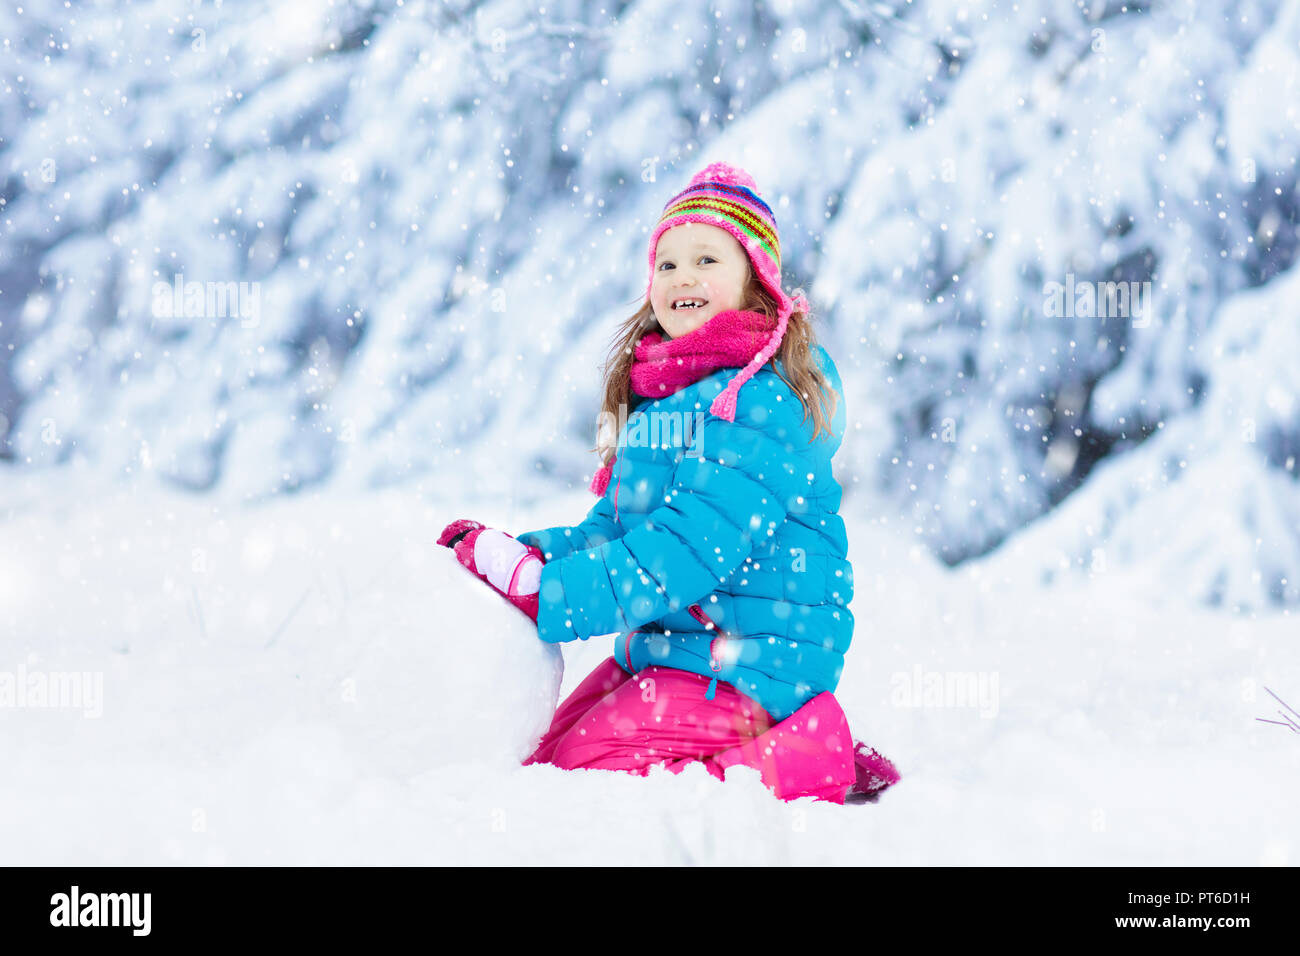 Kid haciendo el muñeco de nieve en parque de nieve del invierno. Los niños juegan en la nieve. Niña en un colorido edificio de chaqueta y sombrero de hombre de nieve